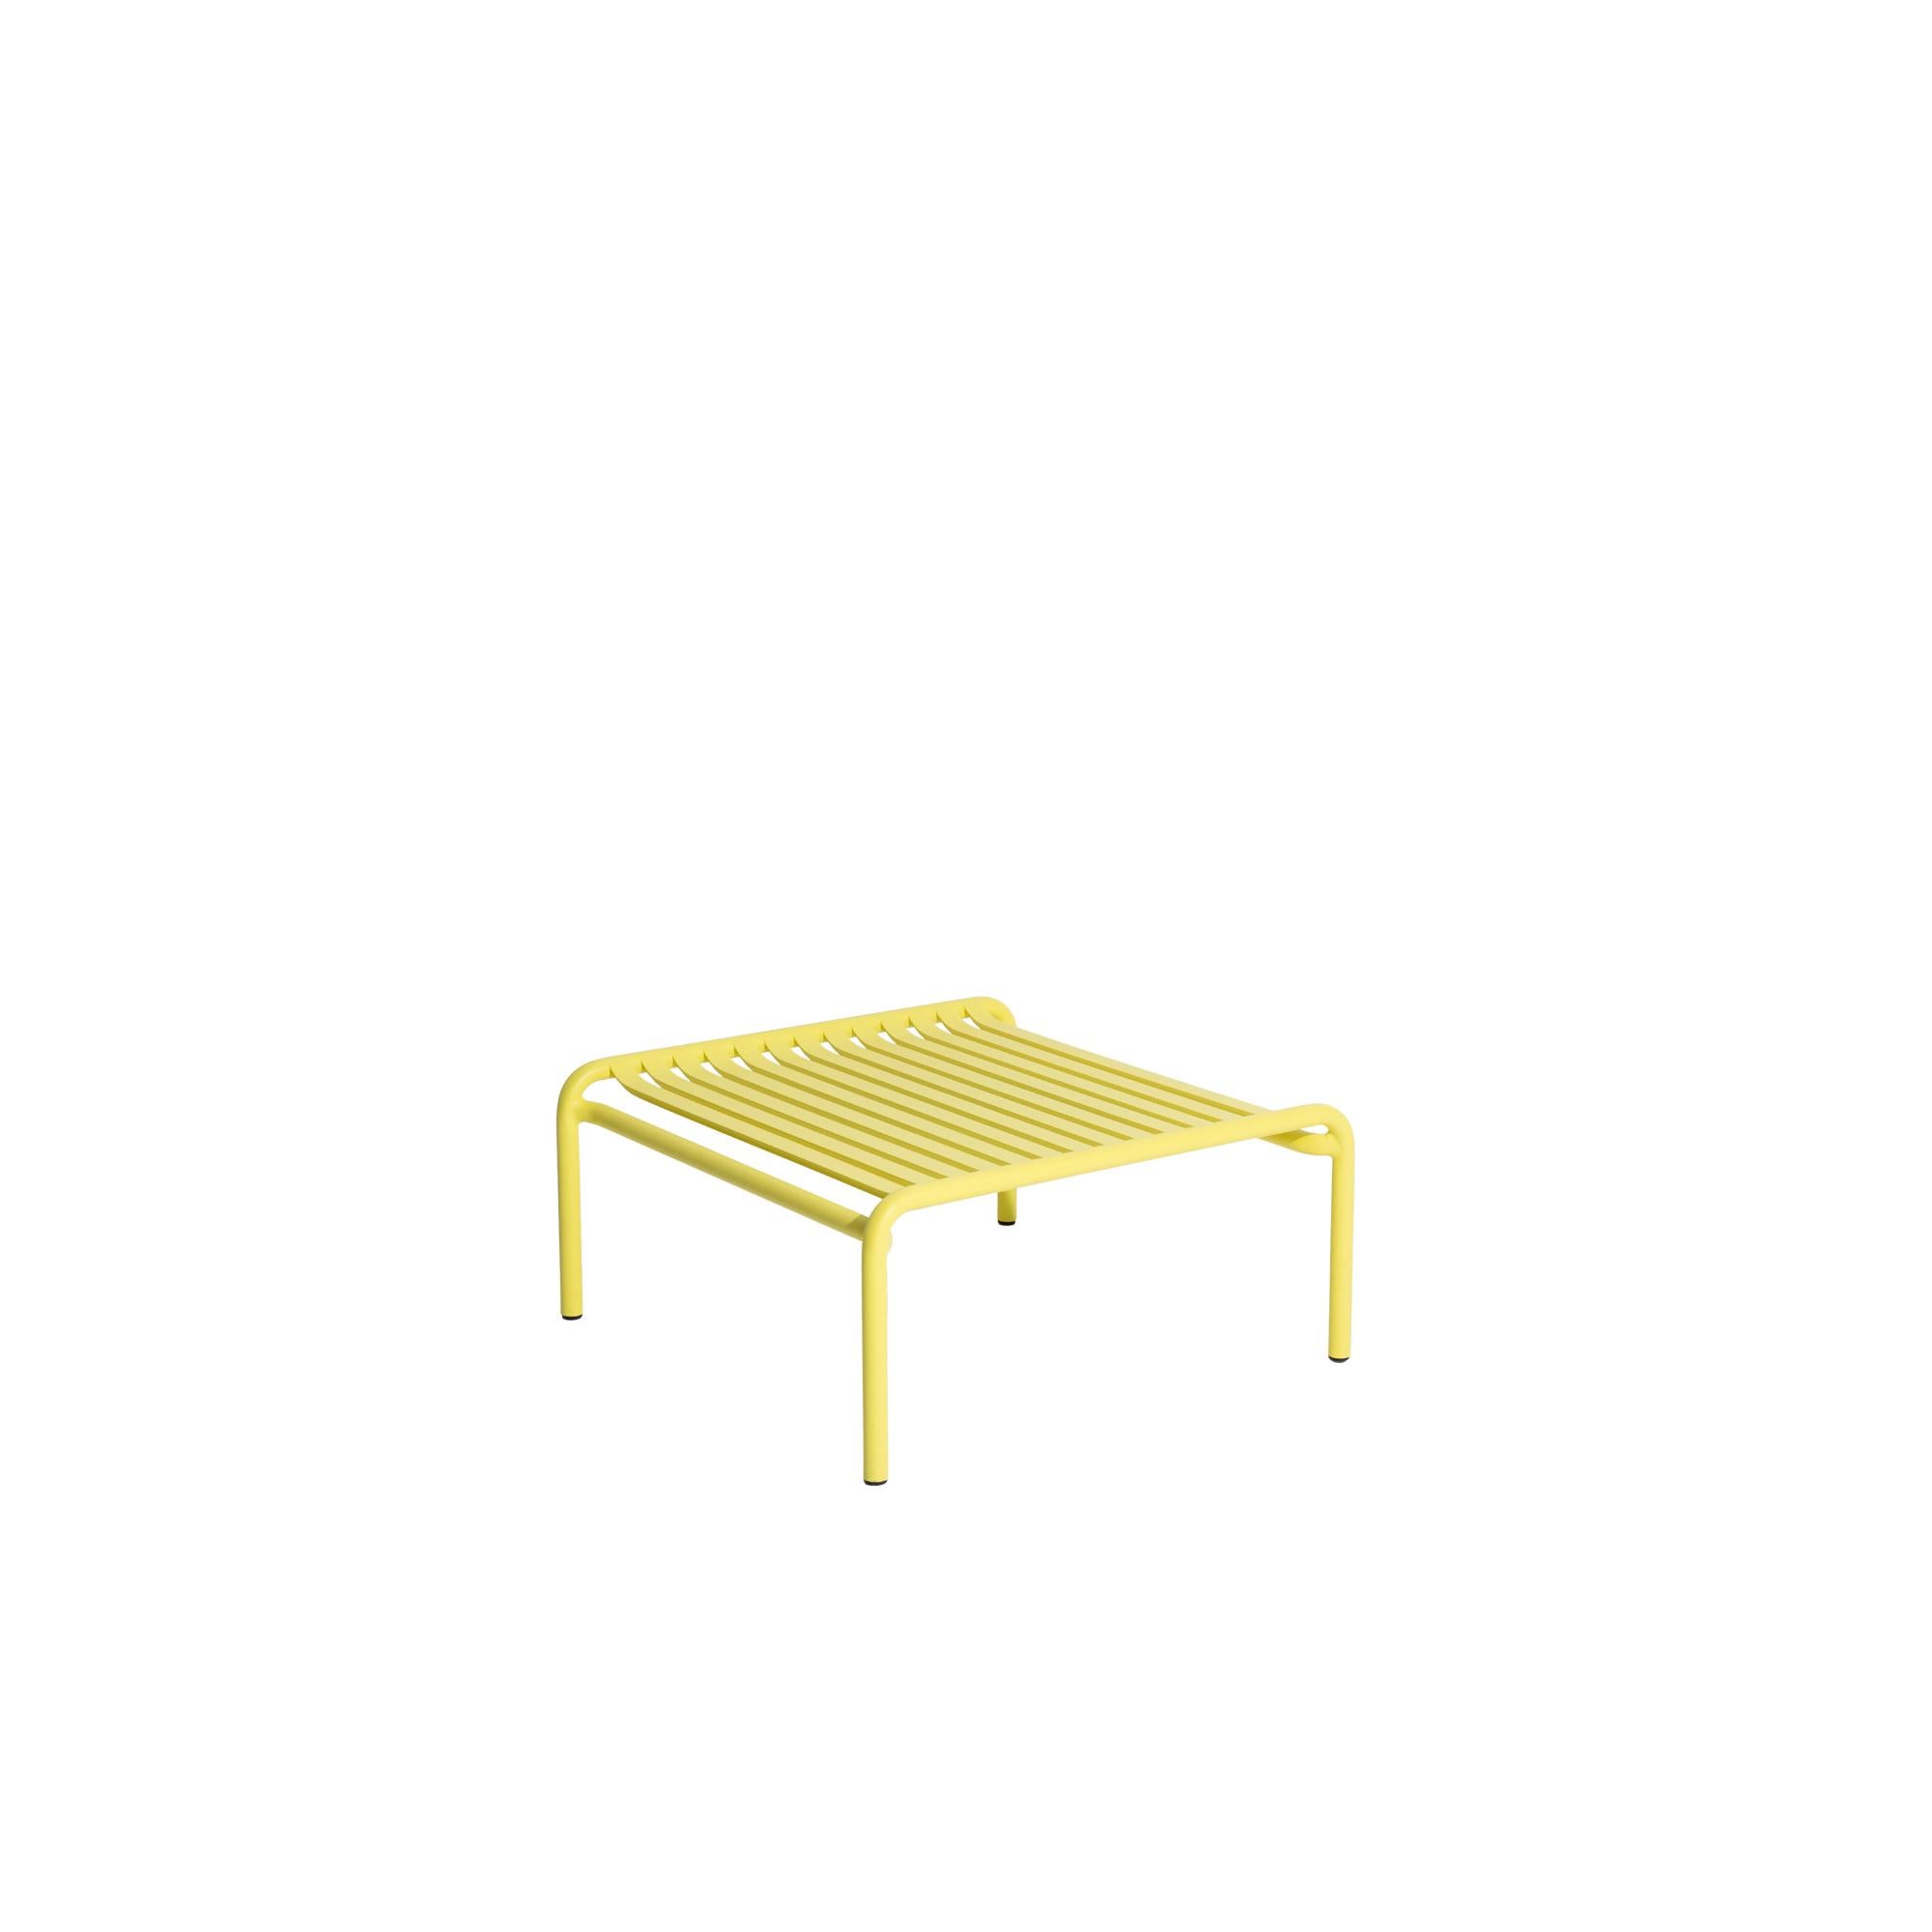 Table basse de week-end Petite Friture en aluminium jaune par Studio BrichetZiegler, 2017.

La collection week-end est une gamme complète de mobilier d'extérieur, en peinture époxy aluminium grainé, finition mate, qui comprend 18 fonctions et 8